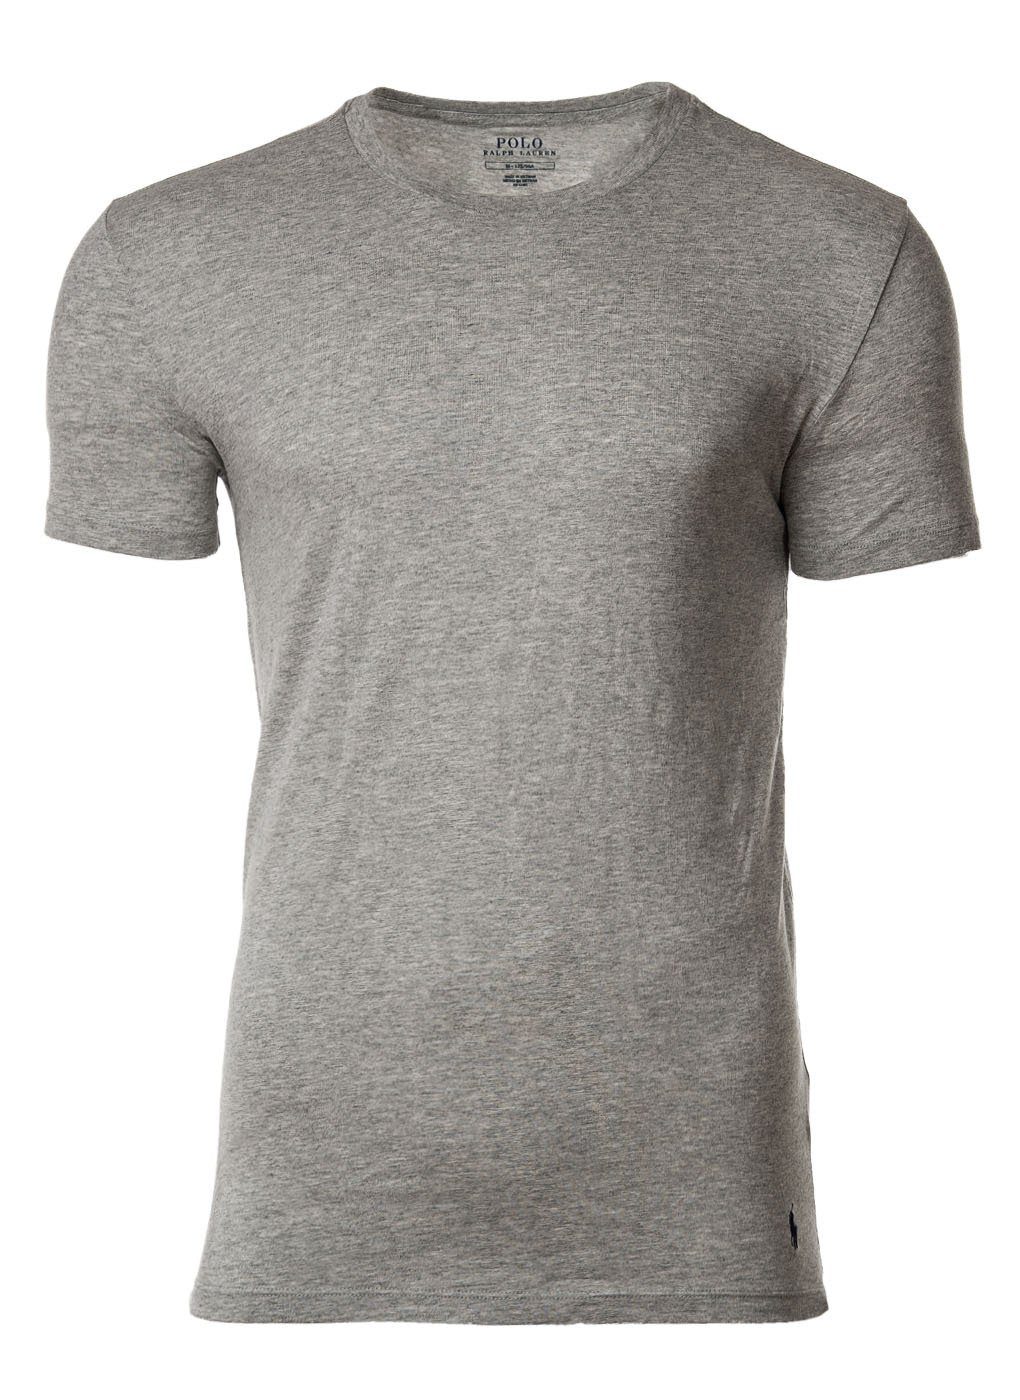 T-Shirts, schwarz/weiß/grau T-Shirt Halbarm 3er Rundhals, Ralph Pack Lauren Herren Polo